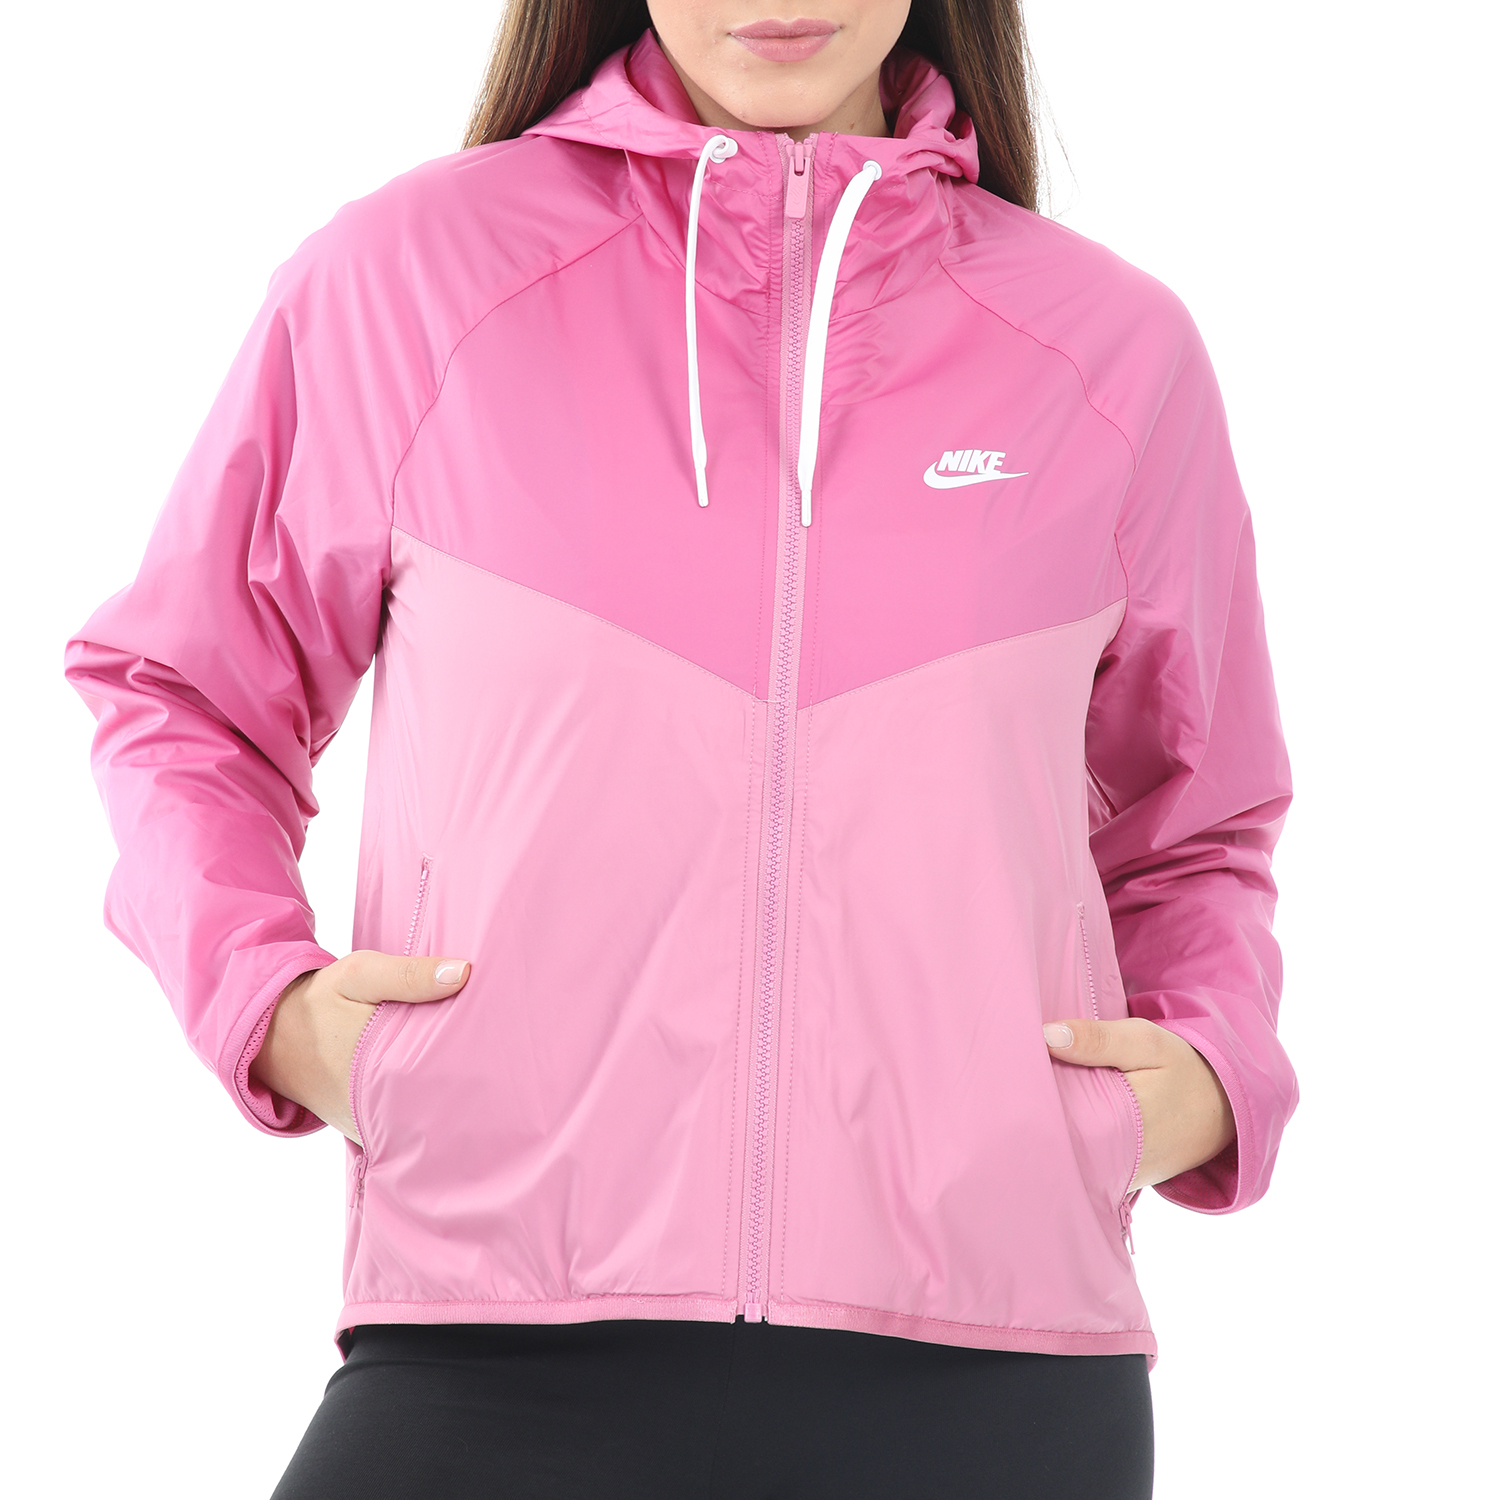 Γυναικεία/Ρούχα/Πανωφόρια/Τζάκετς NIKE - Γυναικείο τζάκετ Nike Sportswear Windrunner ροζ